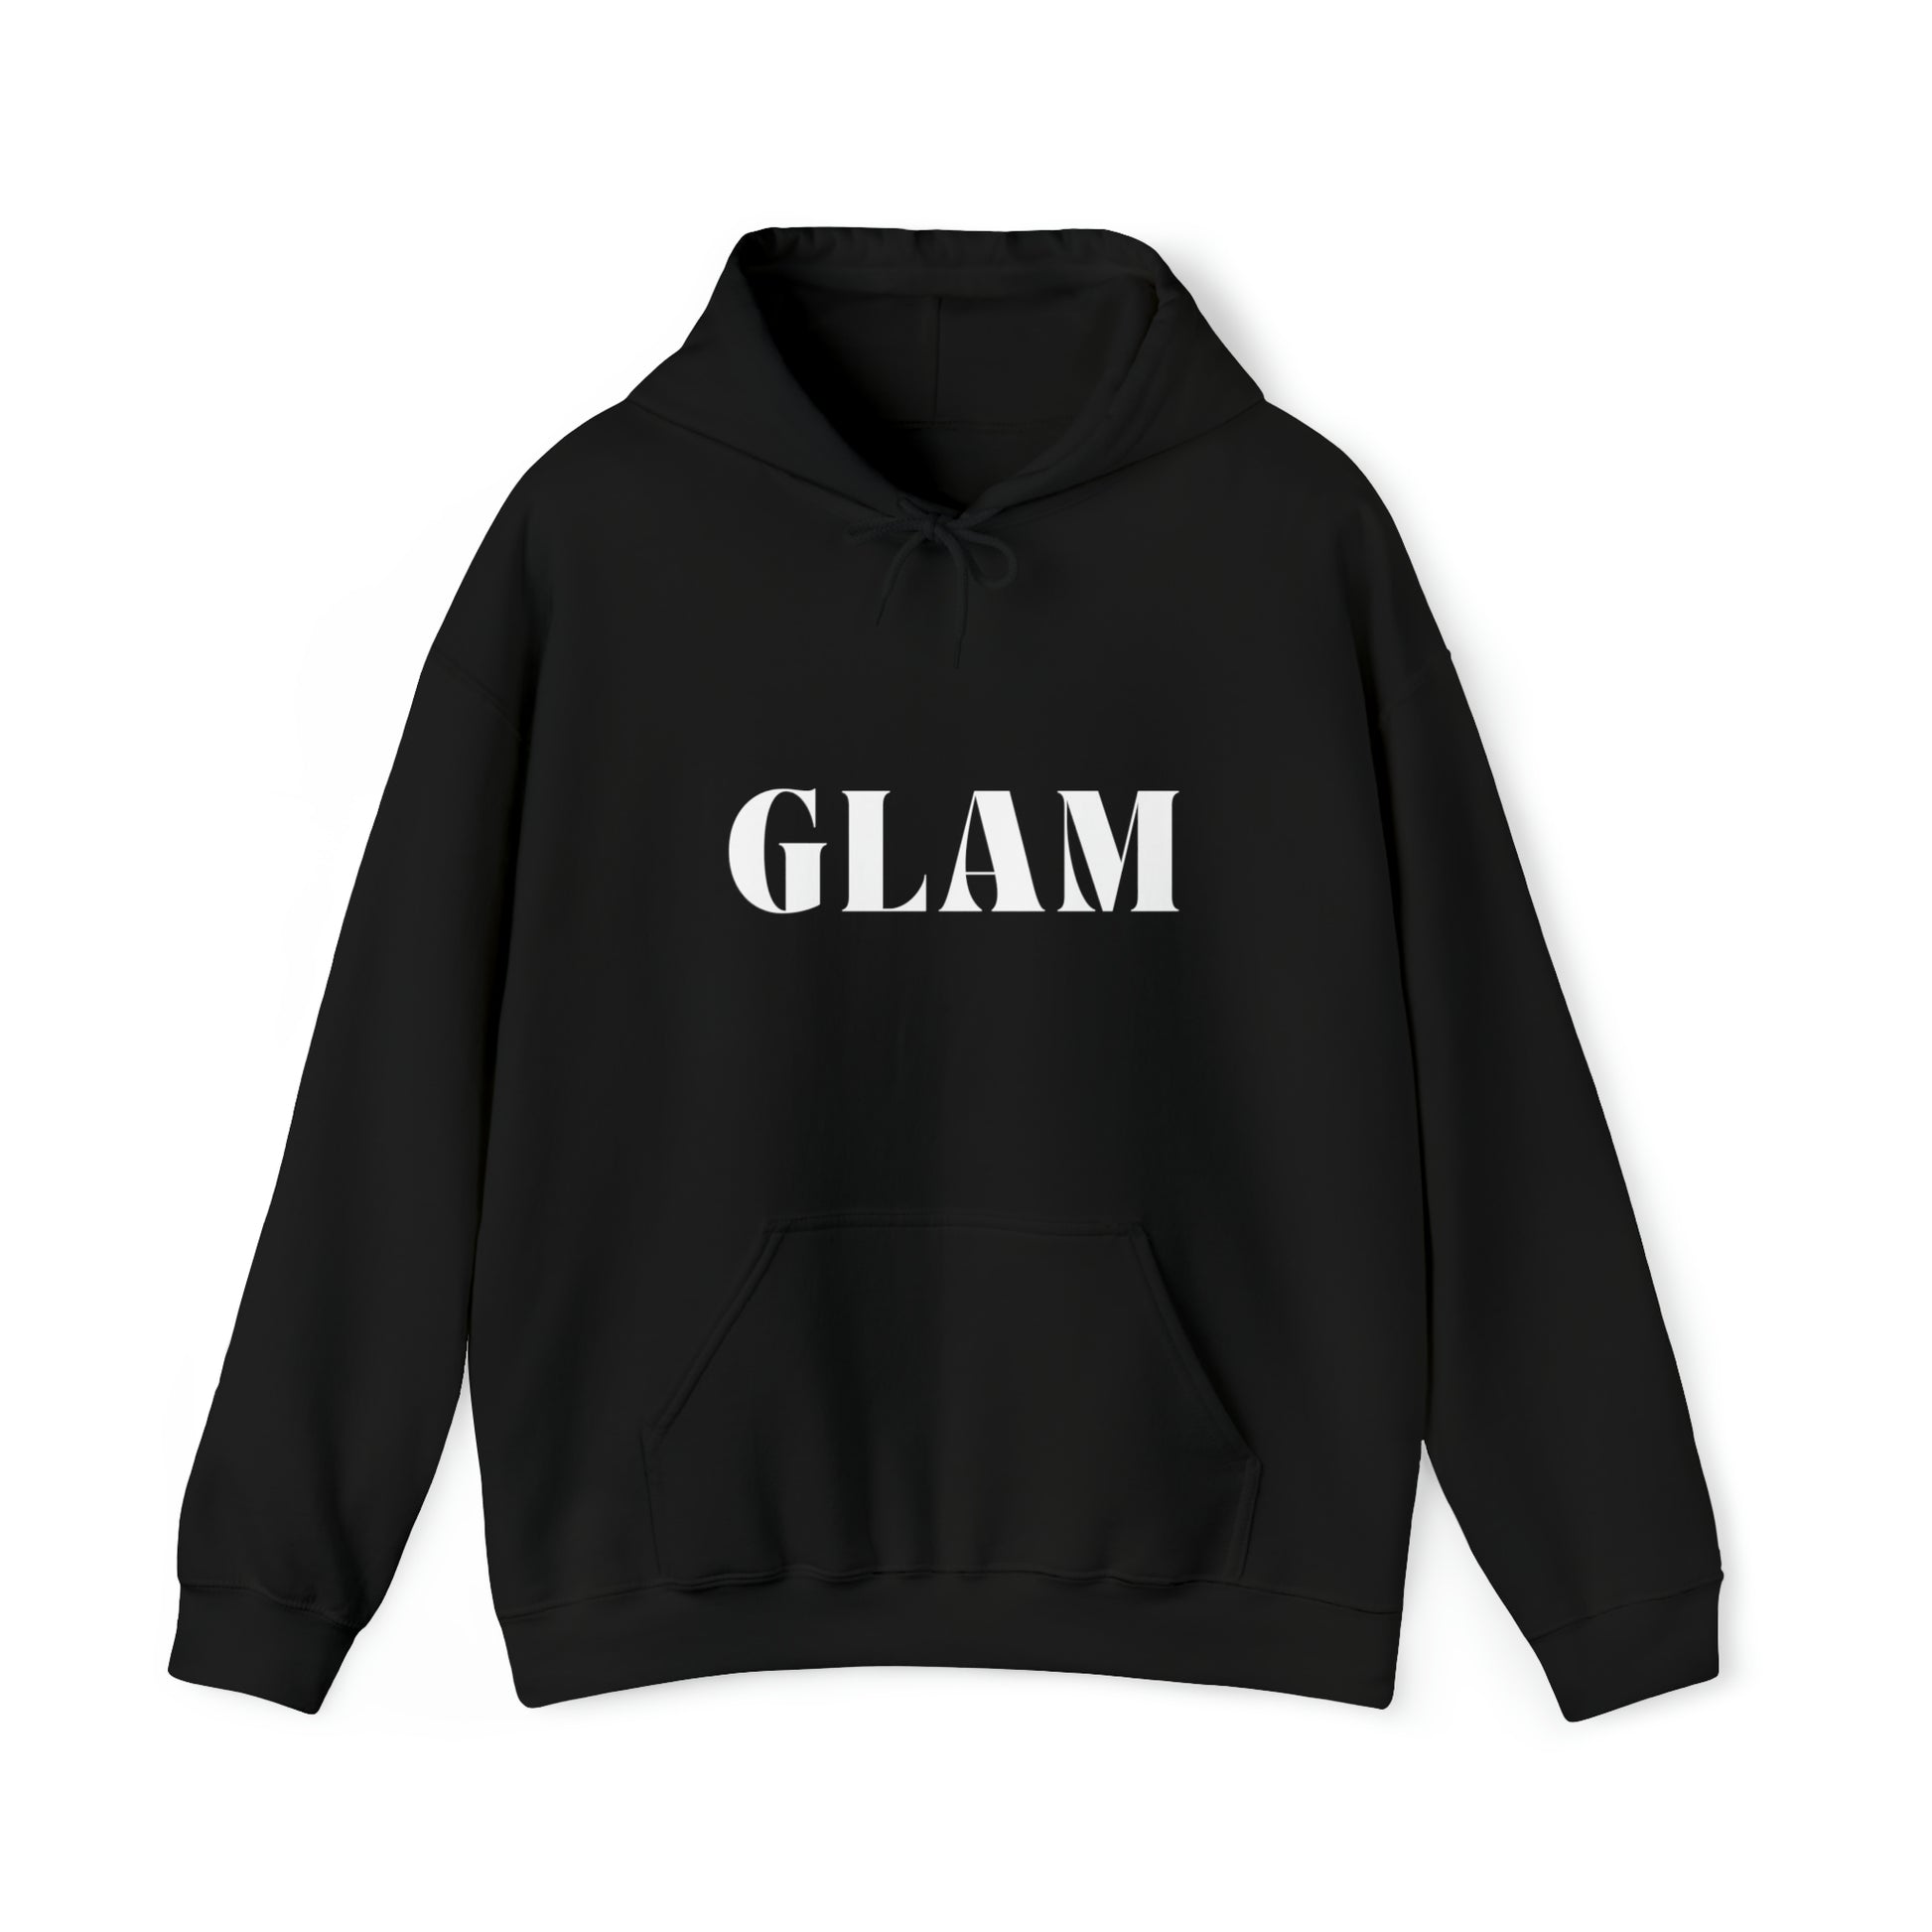 S Black Glam Hoodie from HoodySZN.com